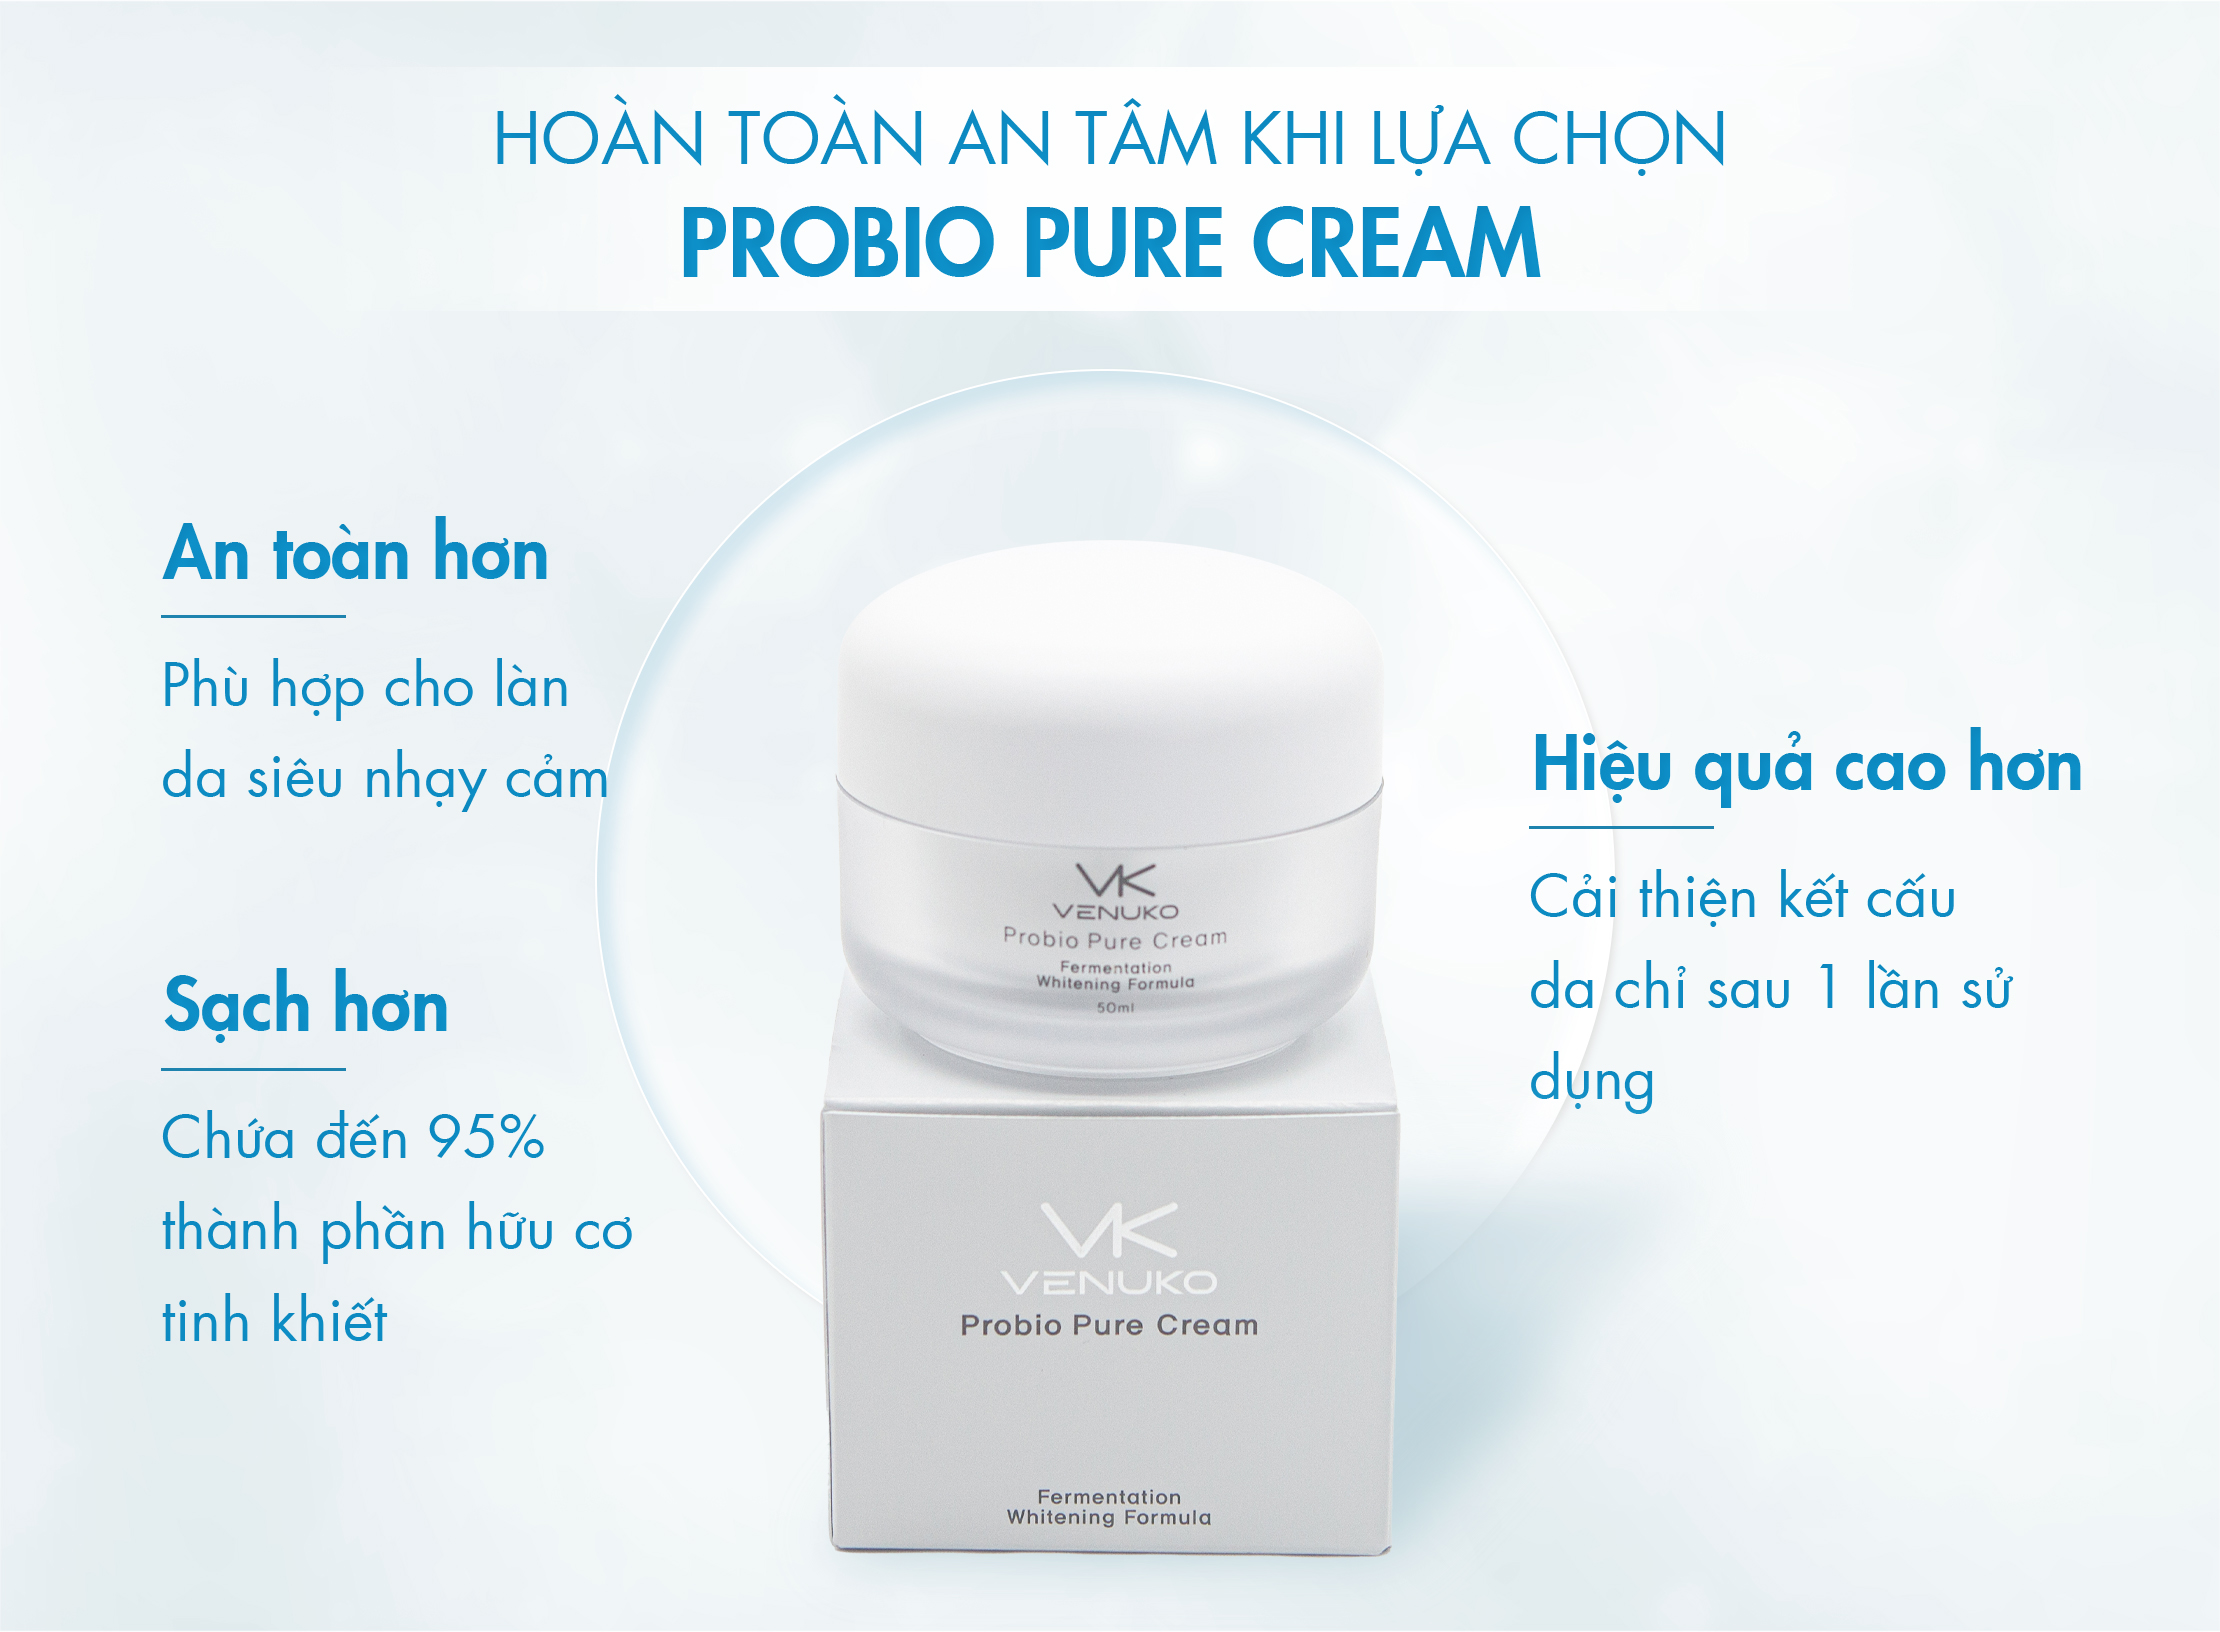 Kem bổ sung dinh dưỡng cho da Venuko Probio Pure Cream 